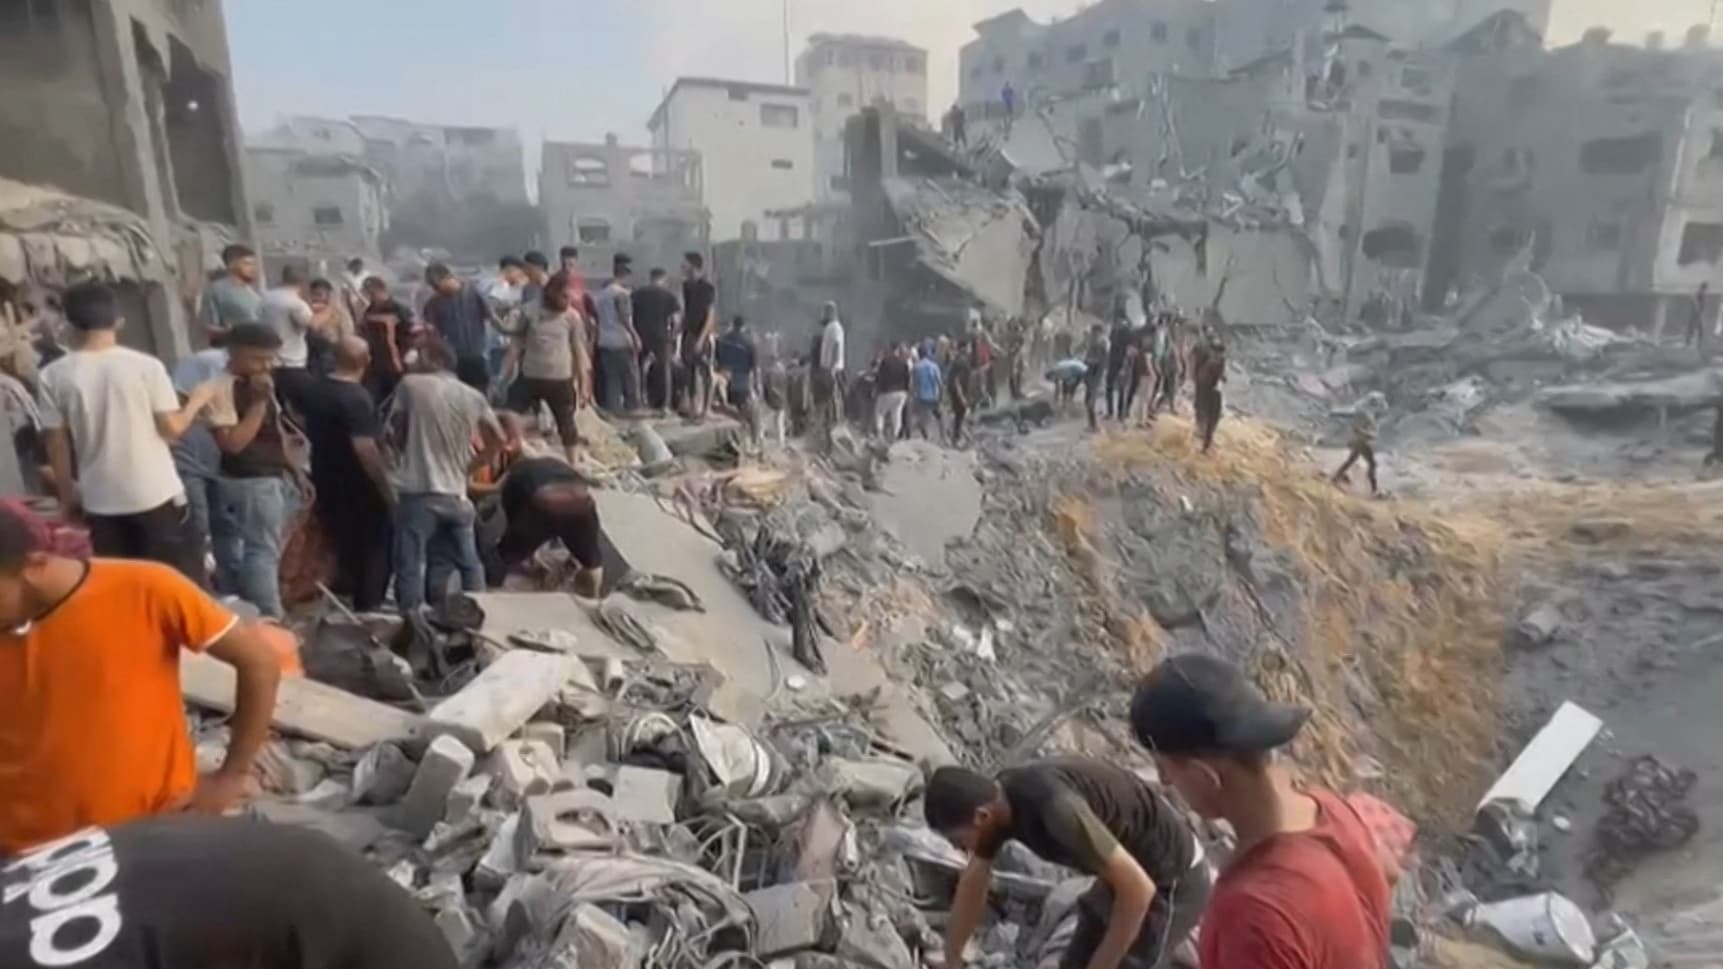 عائلات مذعورة ومرضى لا يمكنهم الفرار.. شاهد كيف تبدو "المرحلة الثانية" لحرب غزة